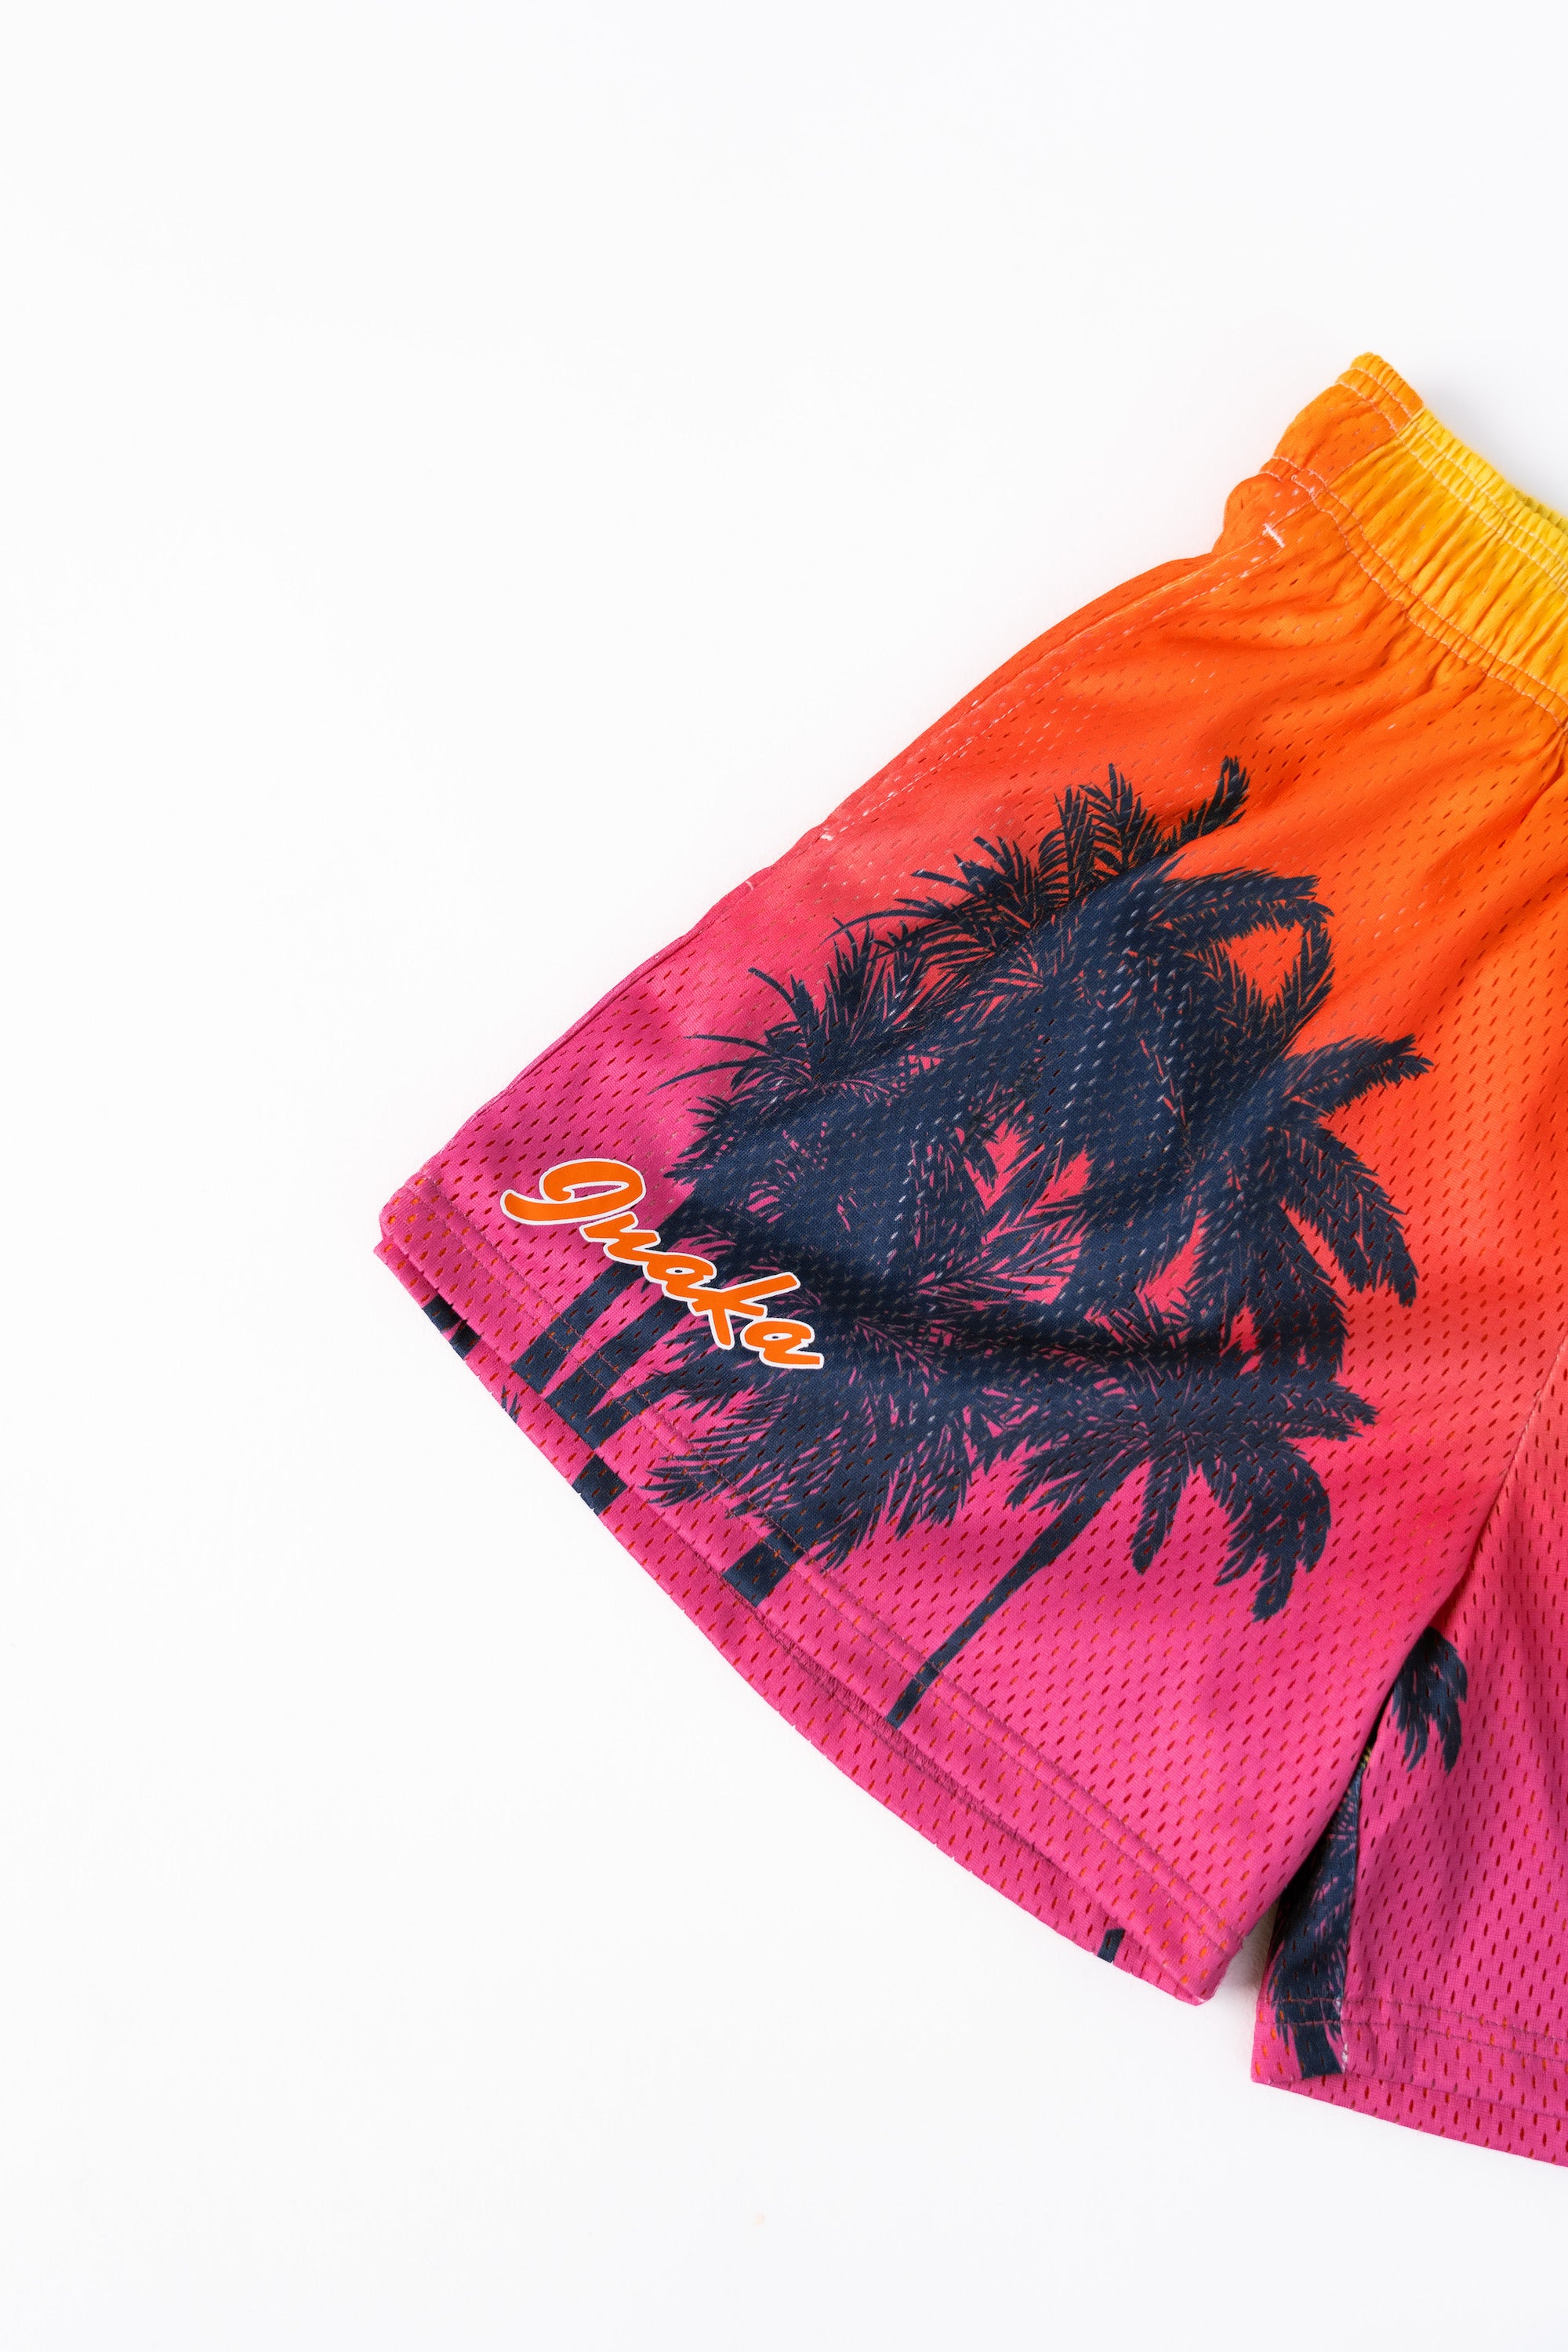 Graphic Mesh Shorts - Miami Vice